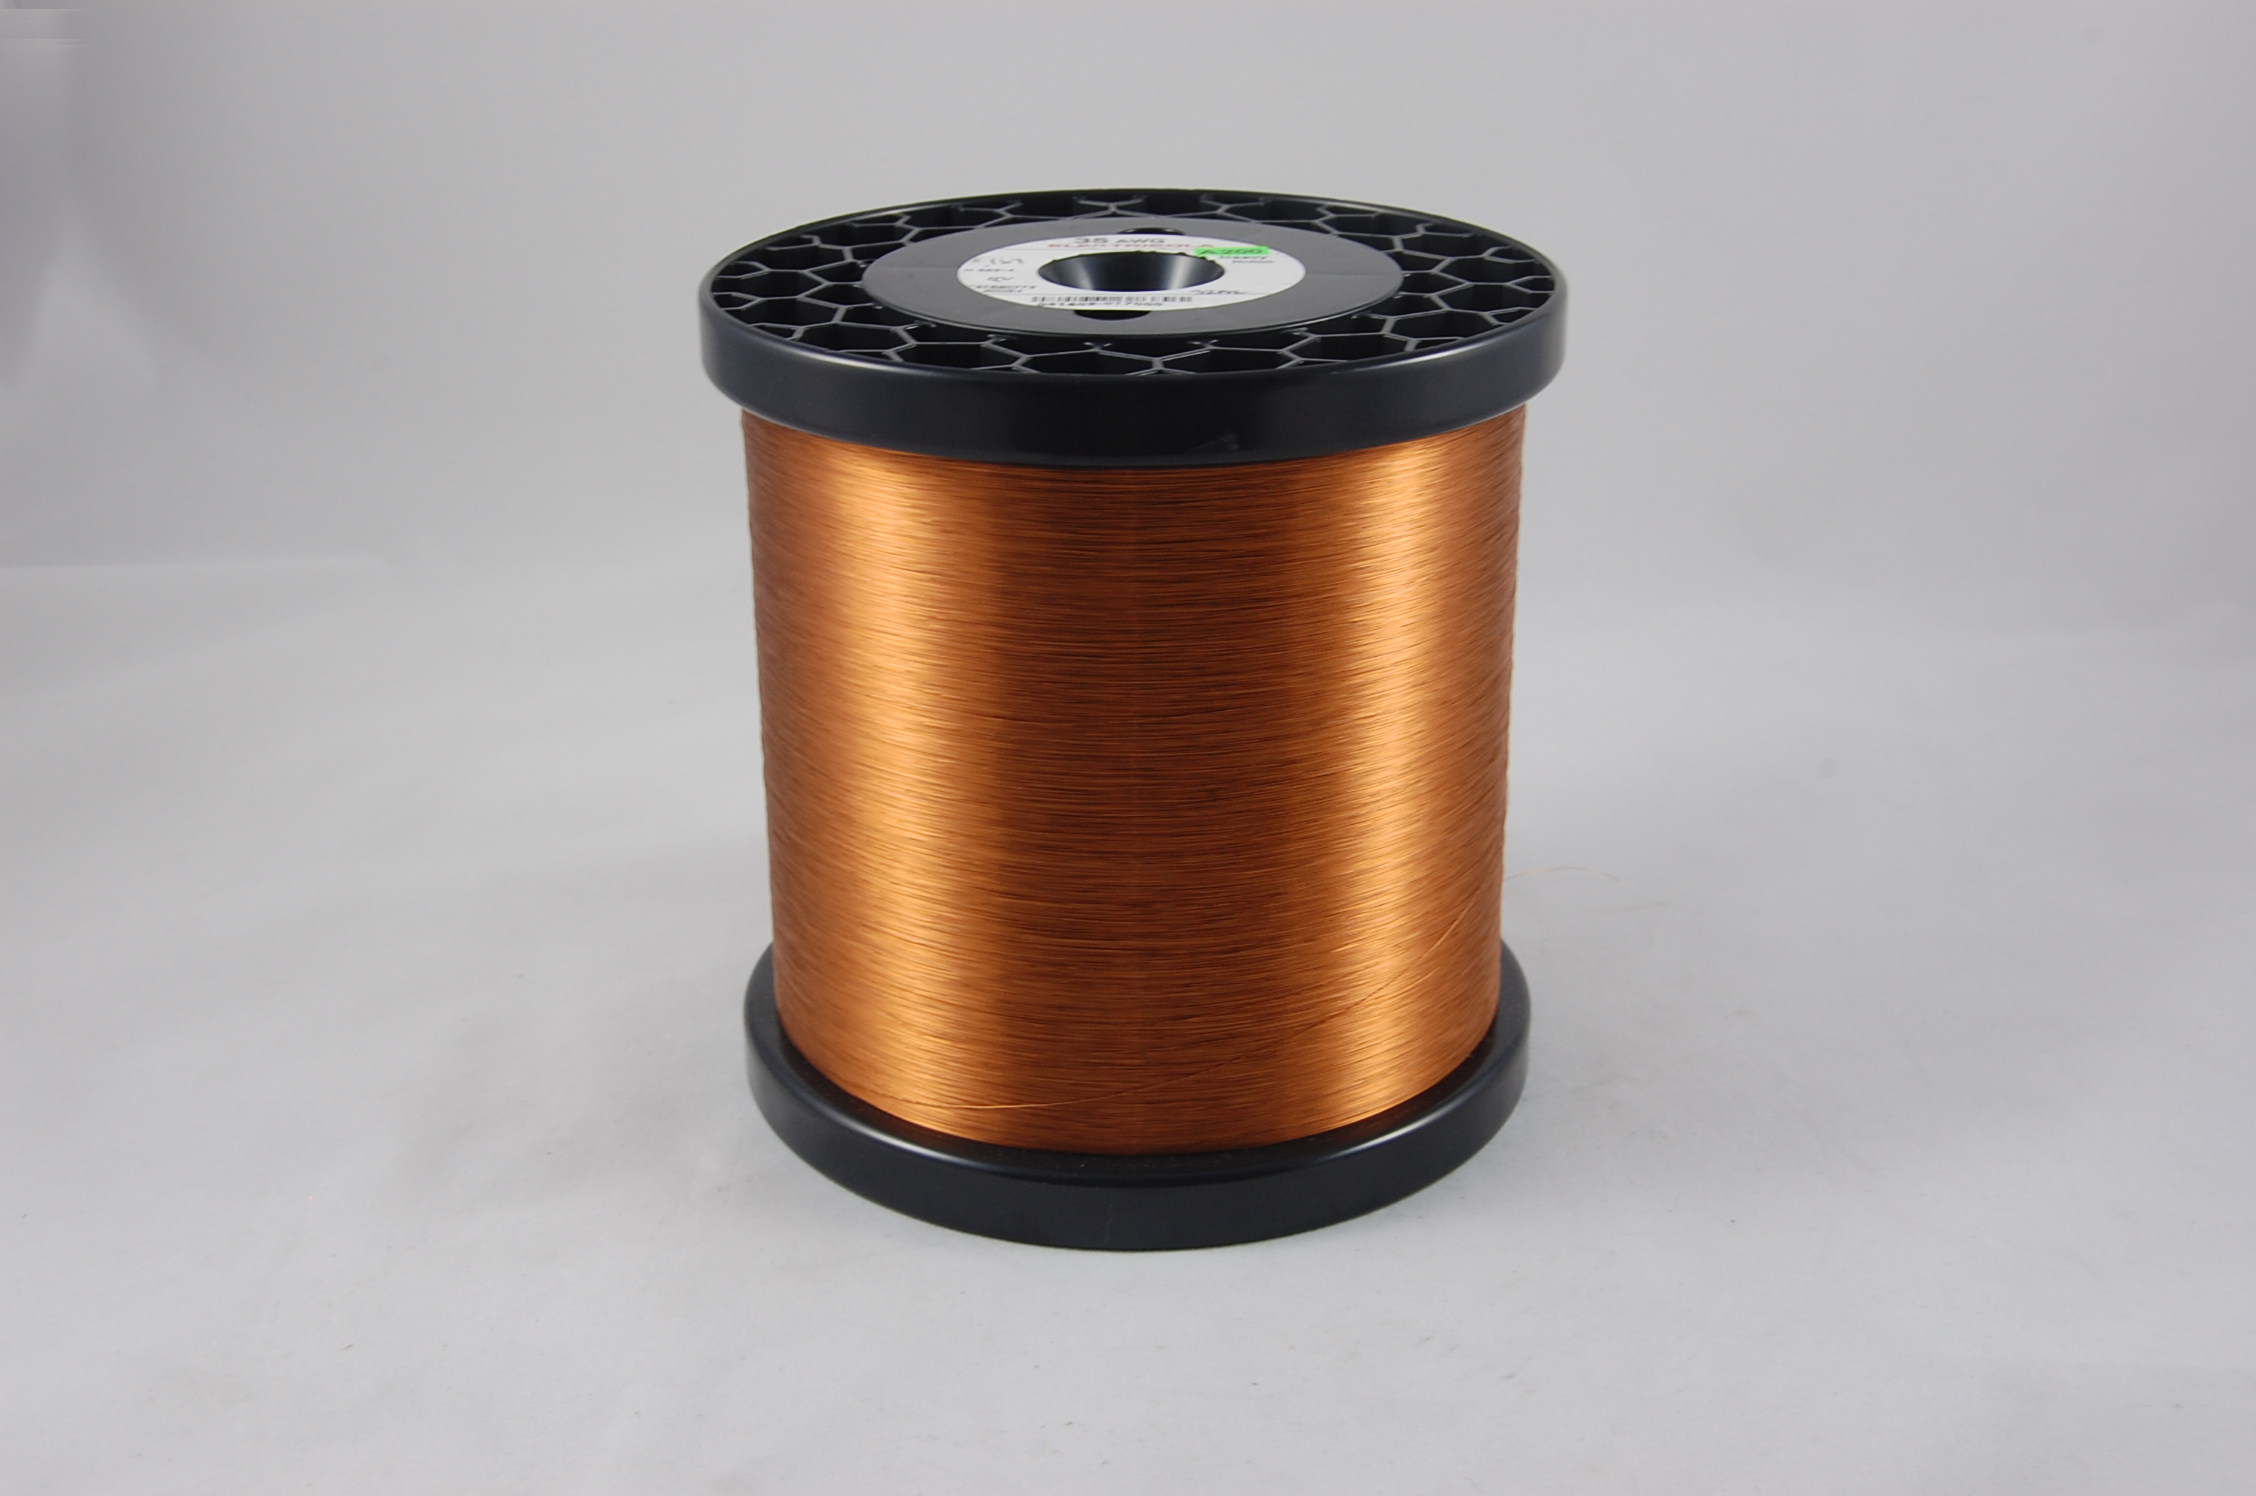 #34 Single Amidester 200 Round MW 74 Copper Magnet Wire 200°C, copper,  14 LB 6" x 6" spool (average wght.)